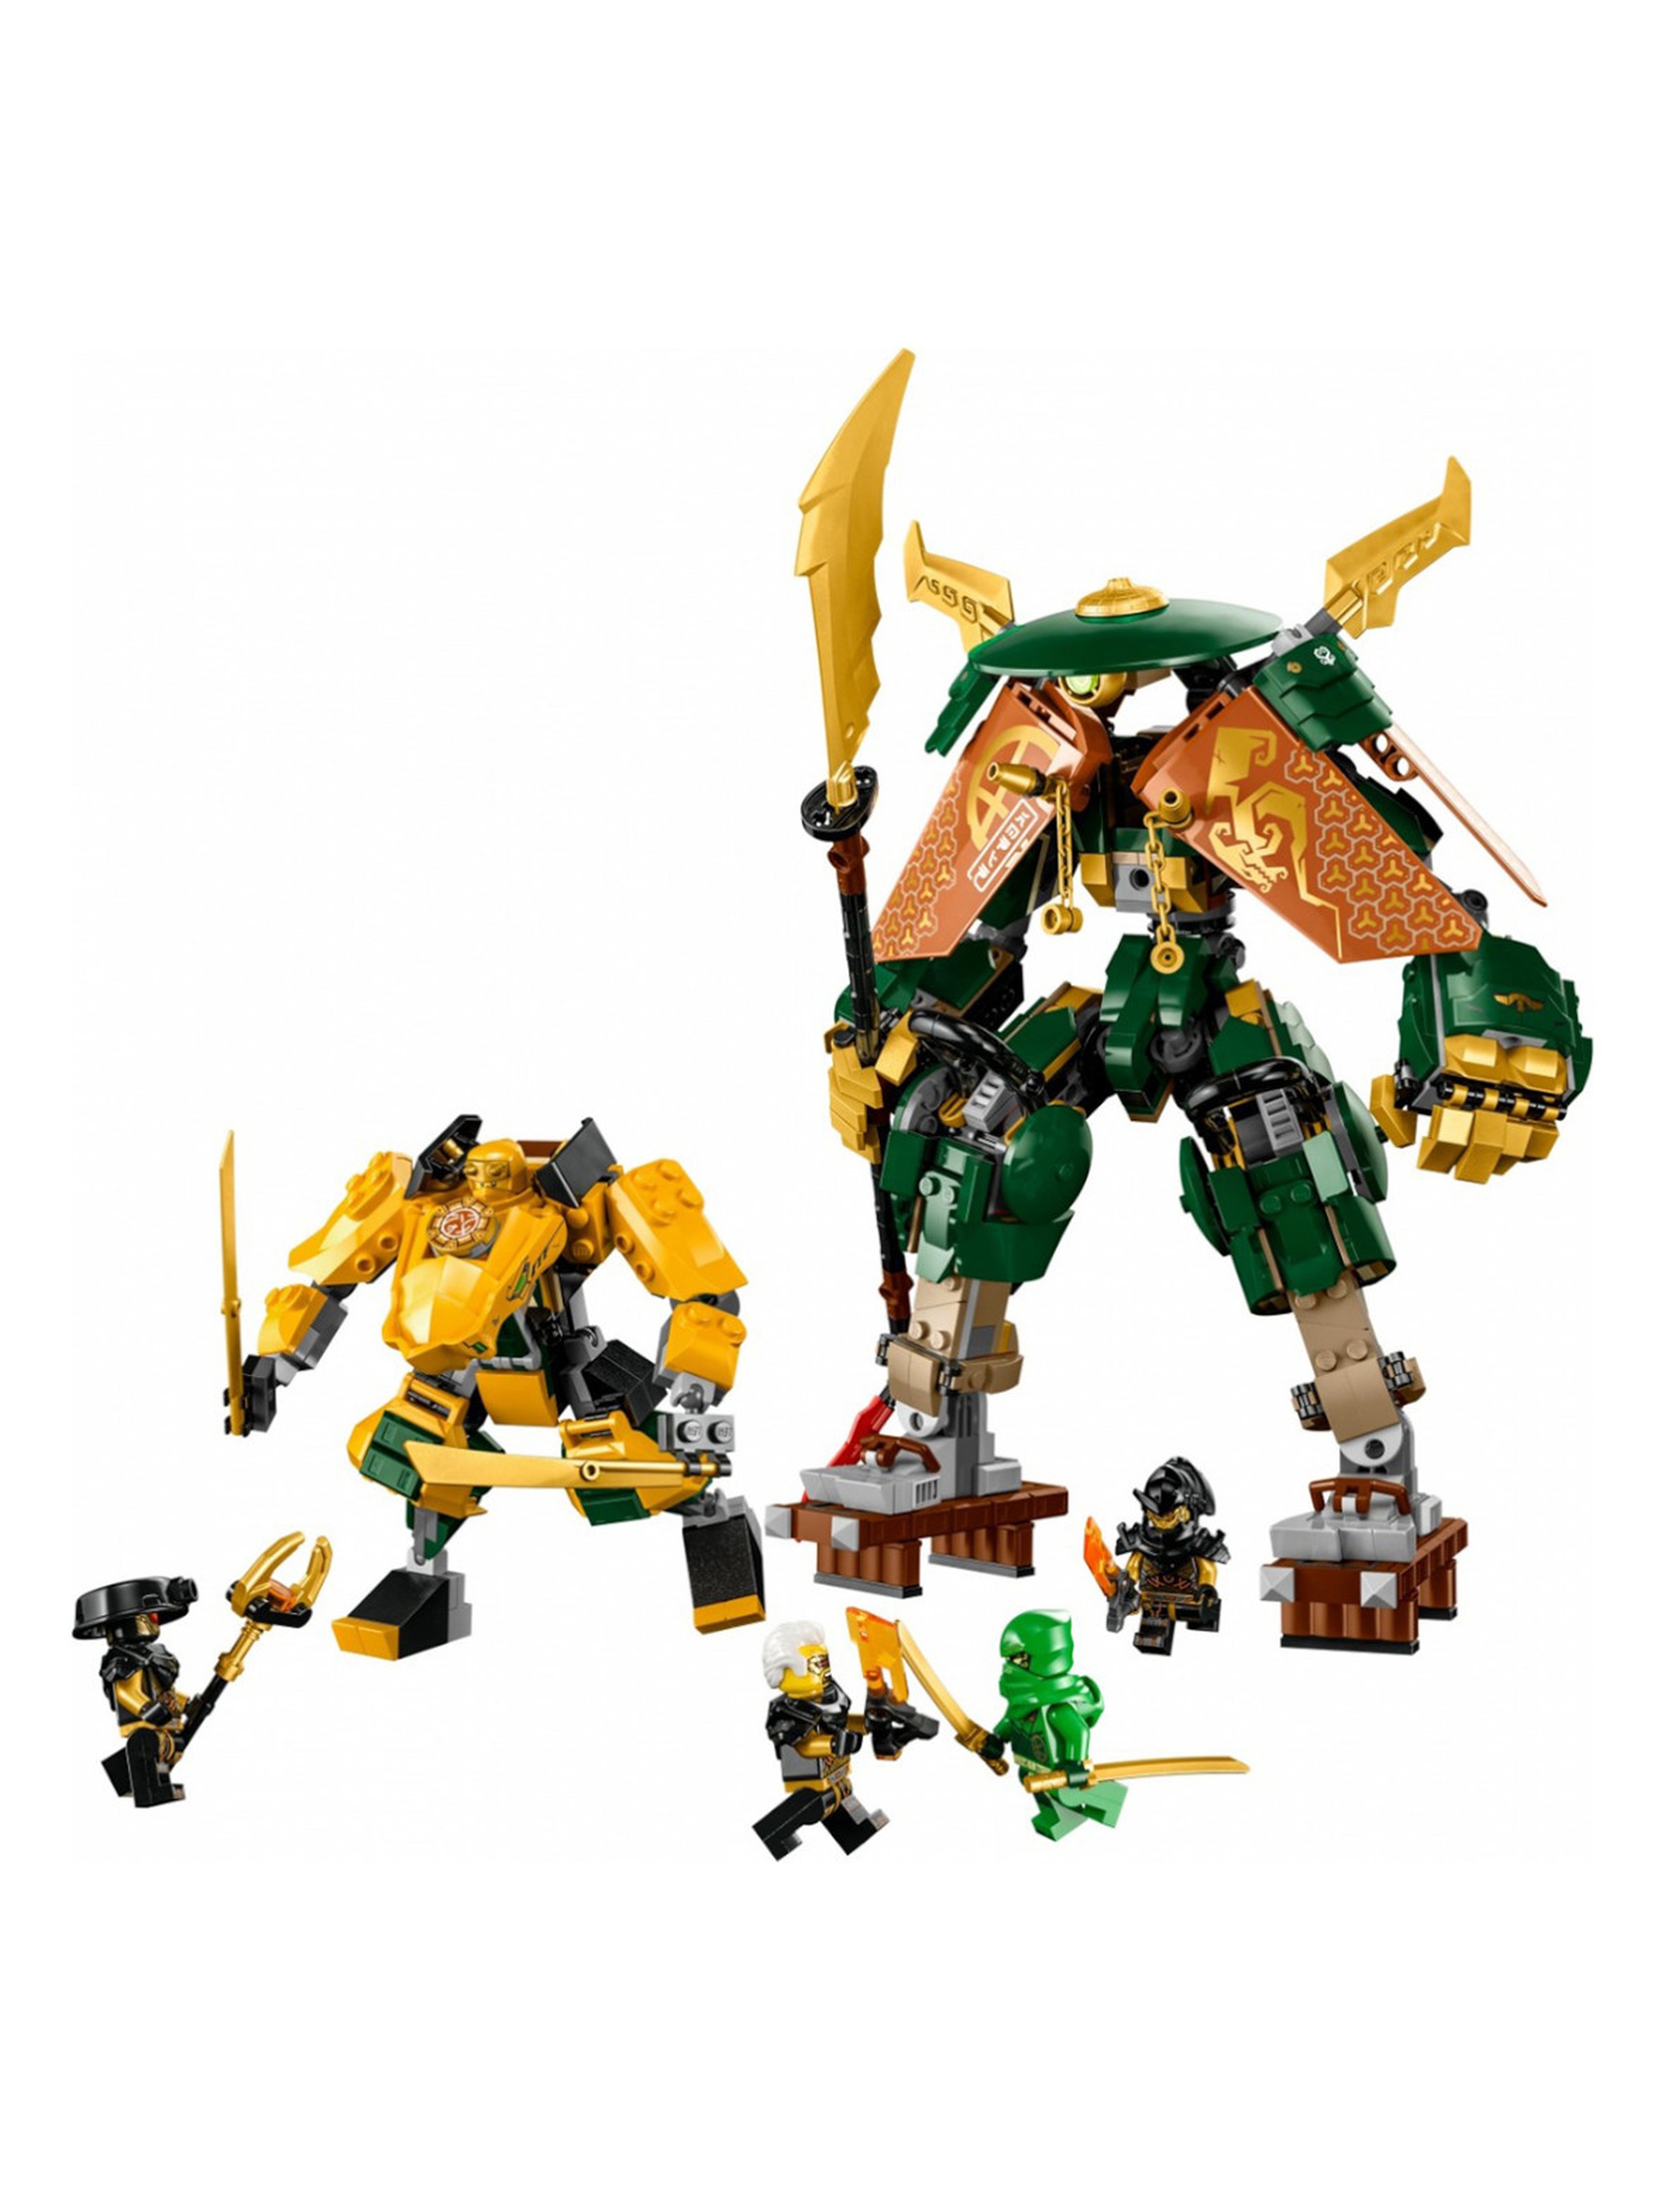 Klocki LEGO Ninjago 71794 Drużyna mechów ninja Lloyda i Arina - 764 elementy, wiek 9 +